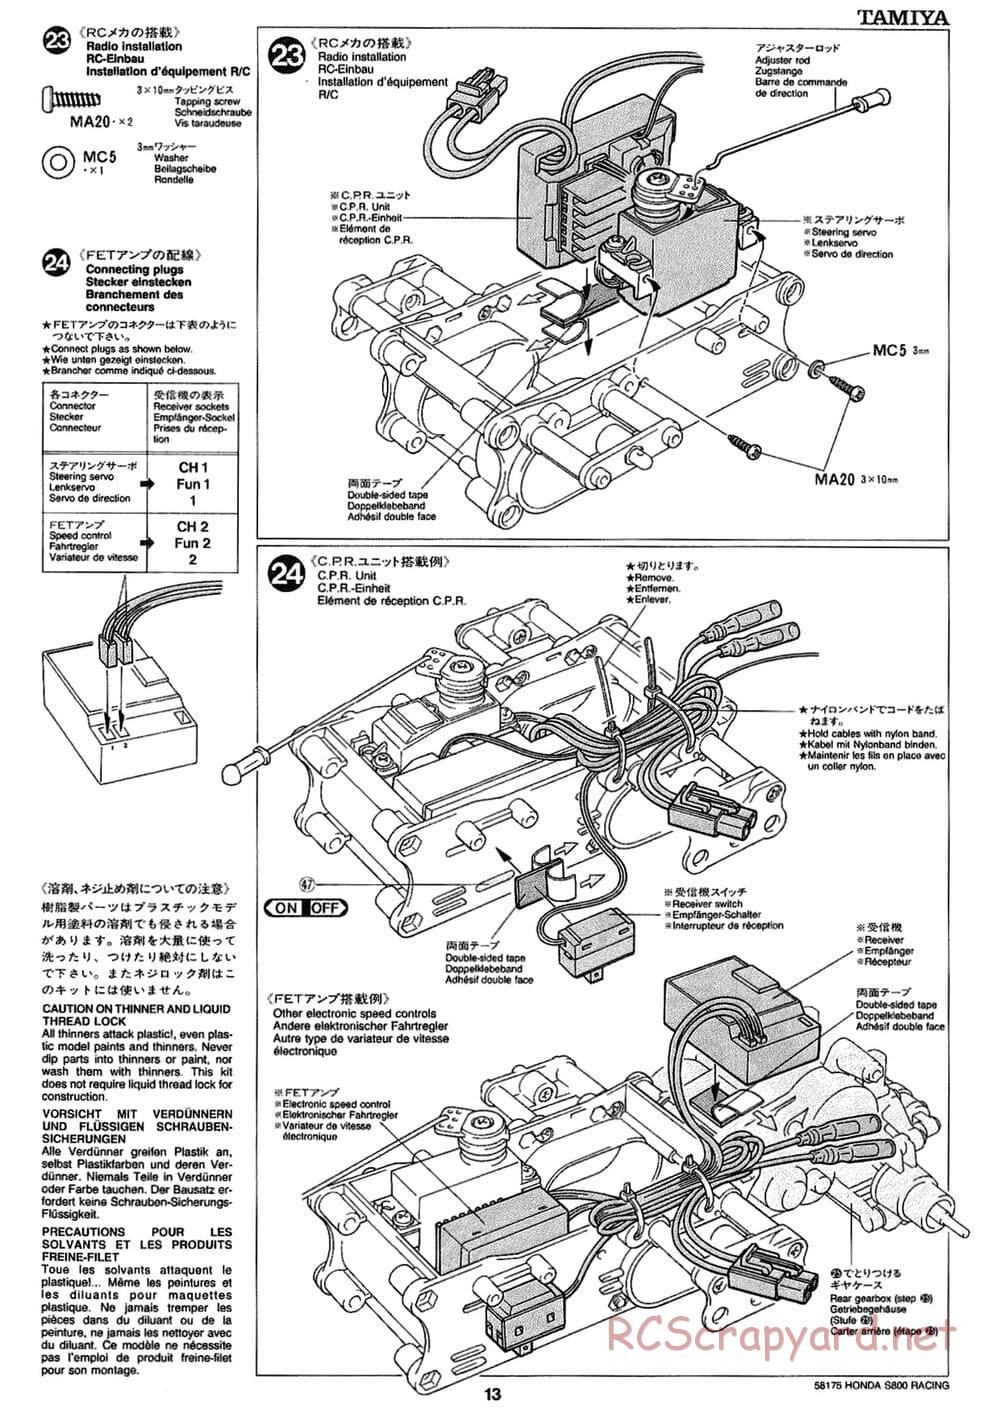 Tamiya - Honda S800 Racing - M02 Chassis - Manual - Page 13